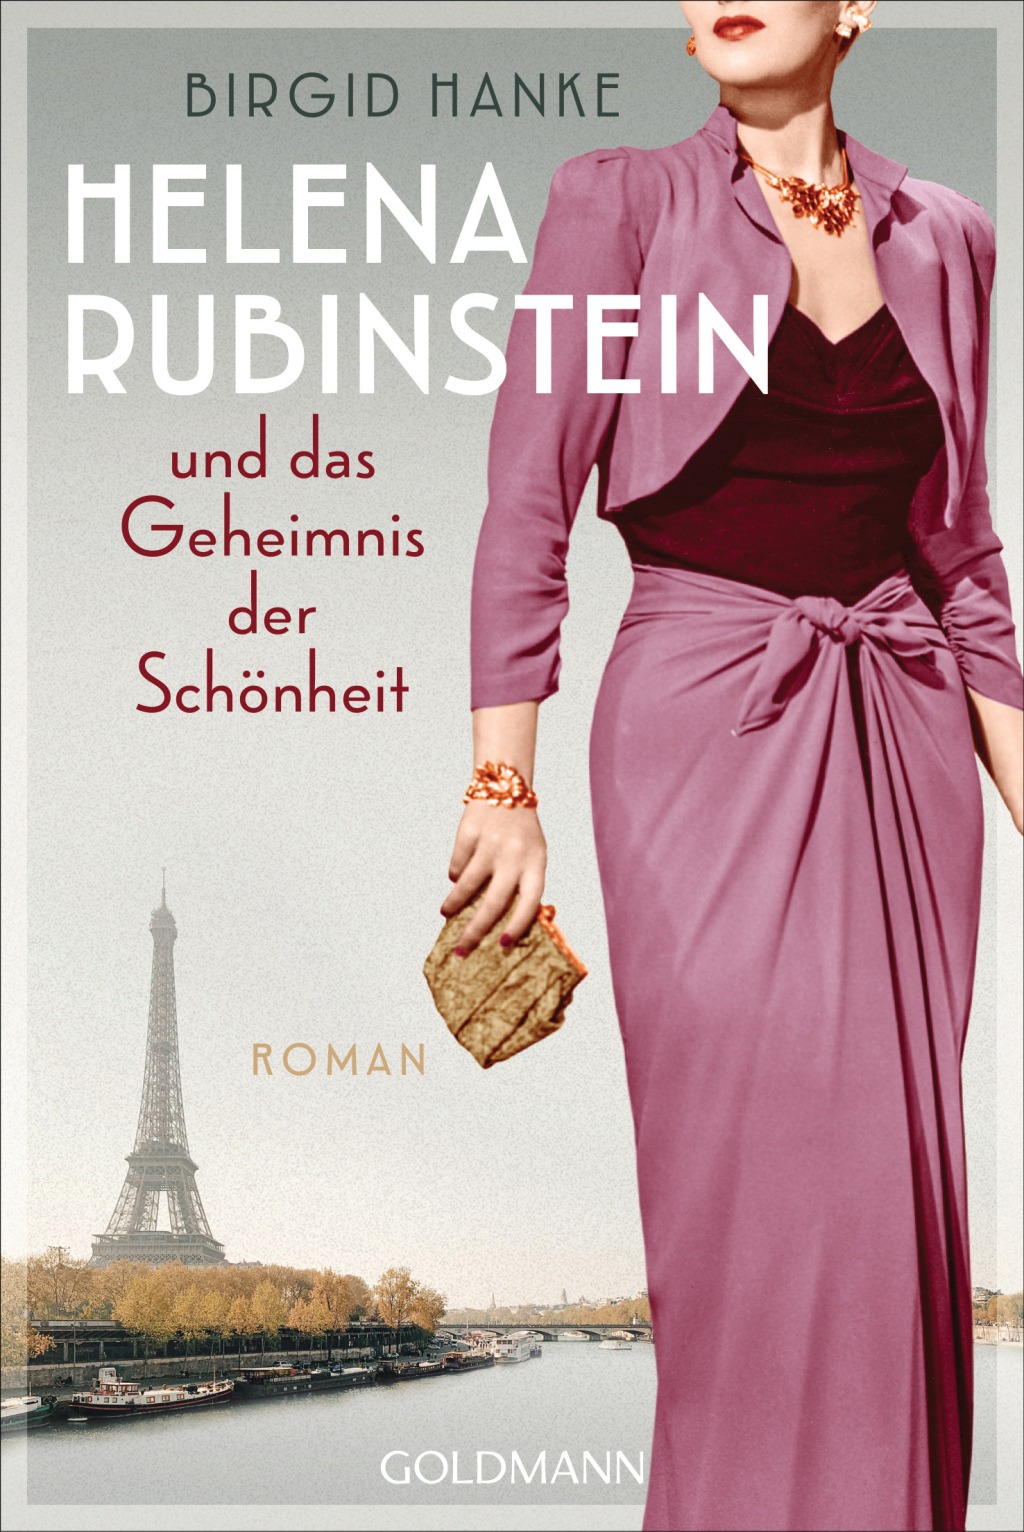 Birgid Hanke: Helena Rubinstein und das Geheimnis der Schönheit